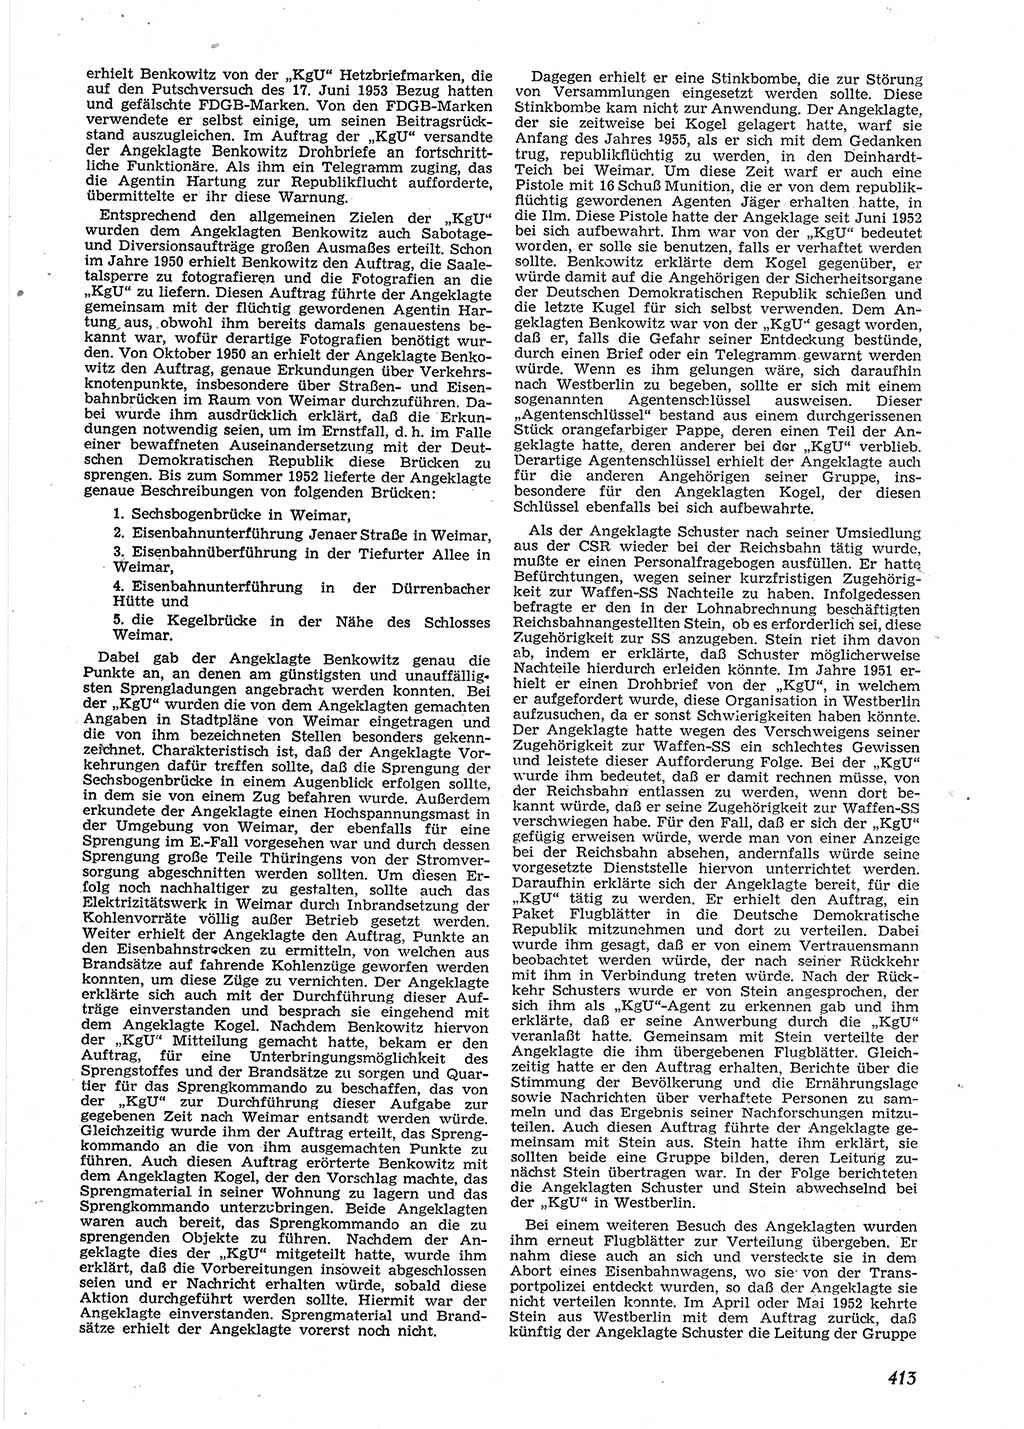 Neue Justiz (NJ), Zeitschrift für Recht und Rechtswissenschaft [Deutsche Demokratische Republik (DDR)], 9. Jahrgang 1955, Seite 413 (NJ DDR 1955, S. 413)